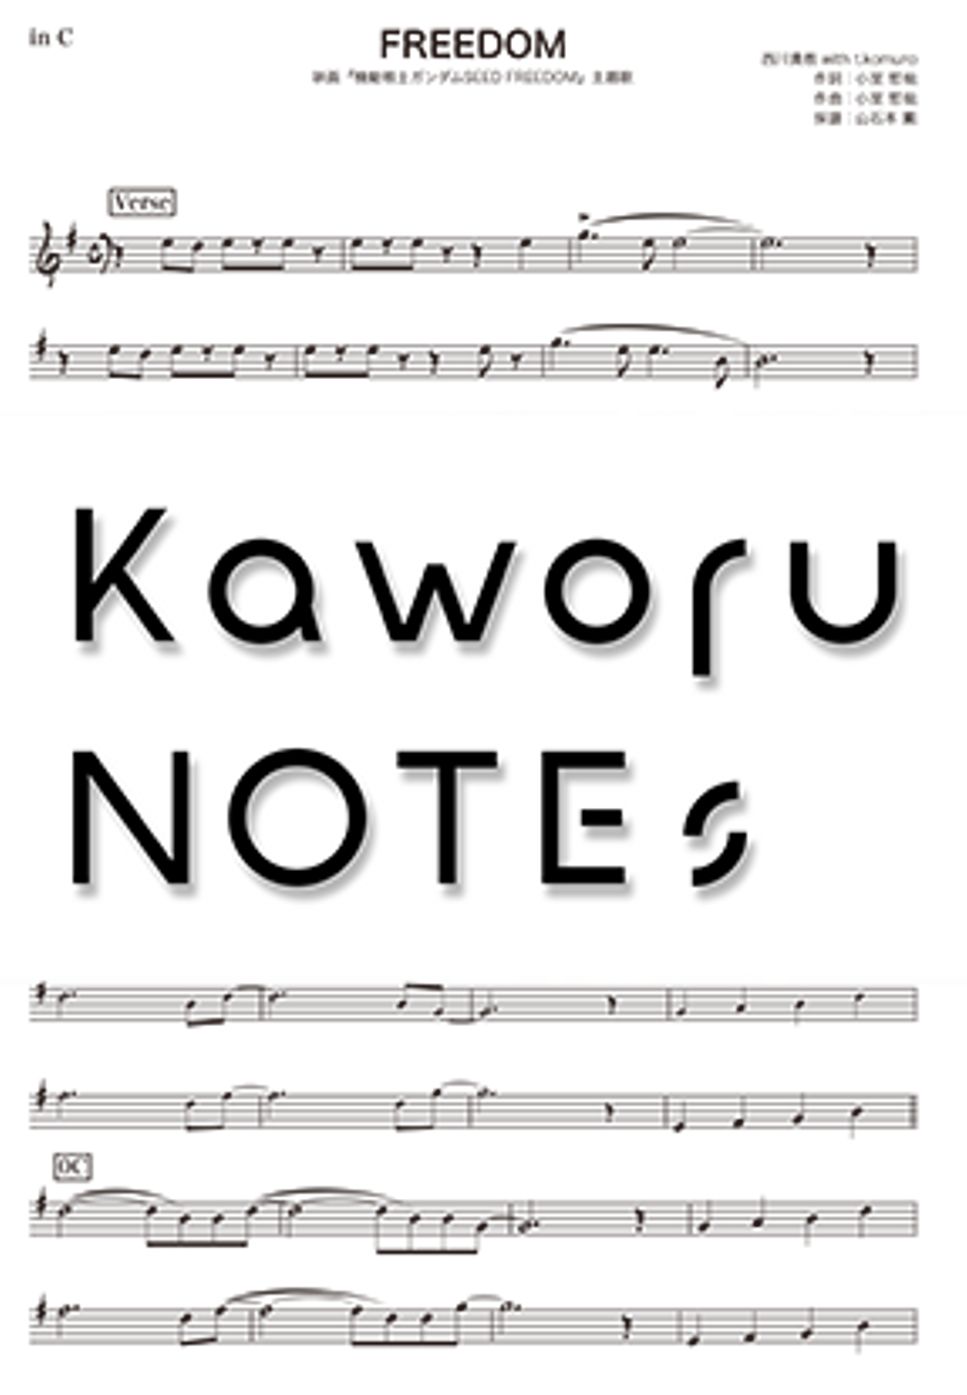 西川貴教 - FREEDOM（in F /映画『機動戦士ガンダムSEED FREEDOM』主題歌） by Kaworu NOTEs